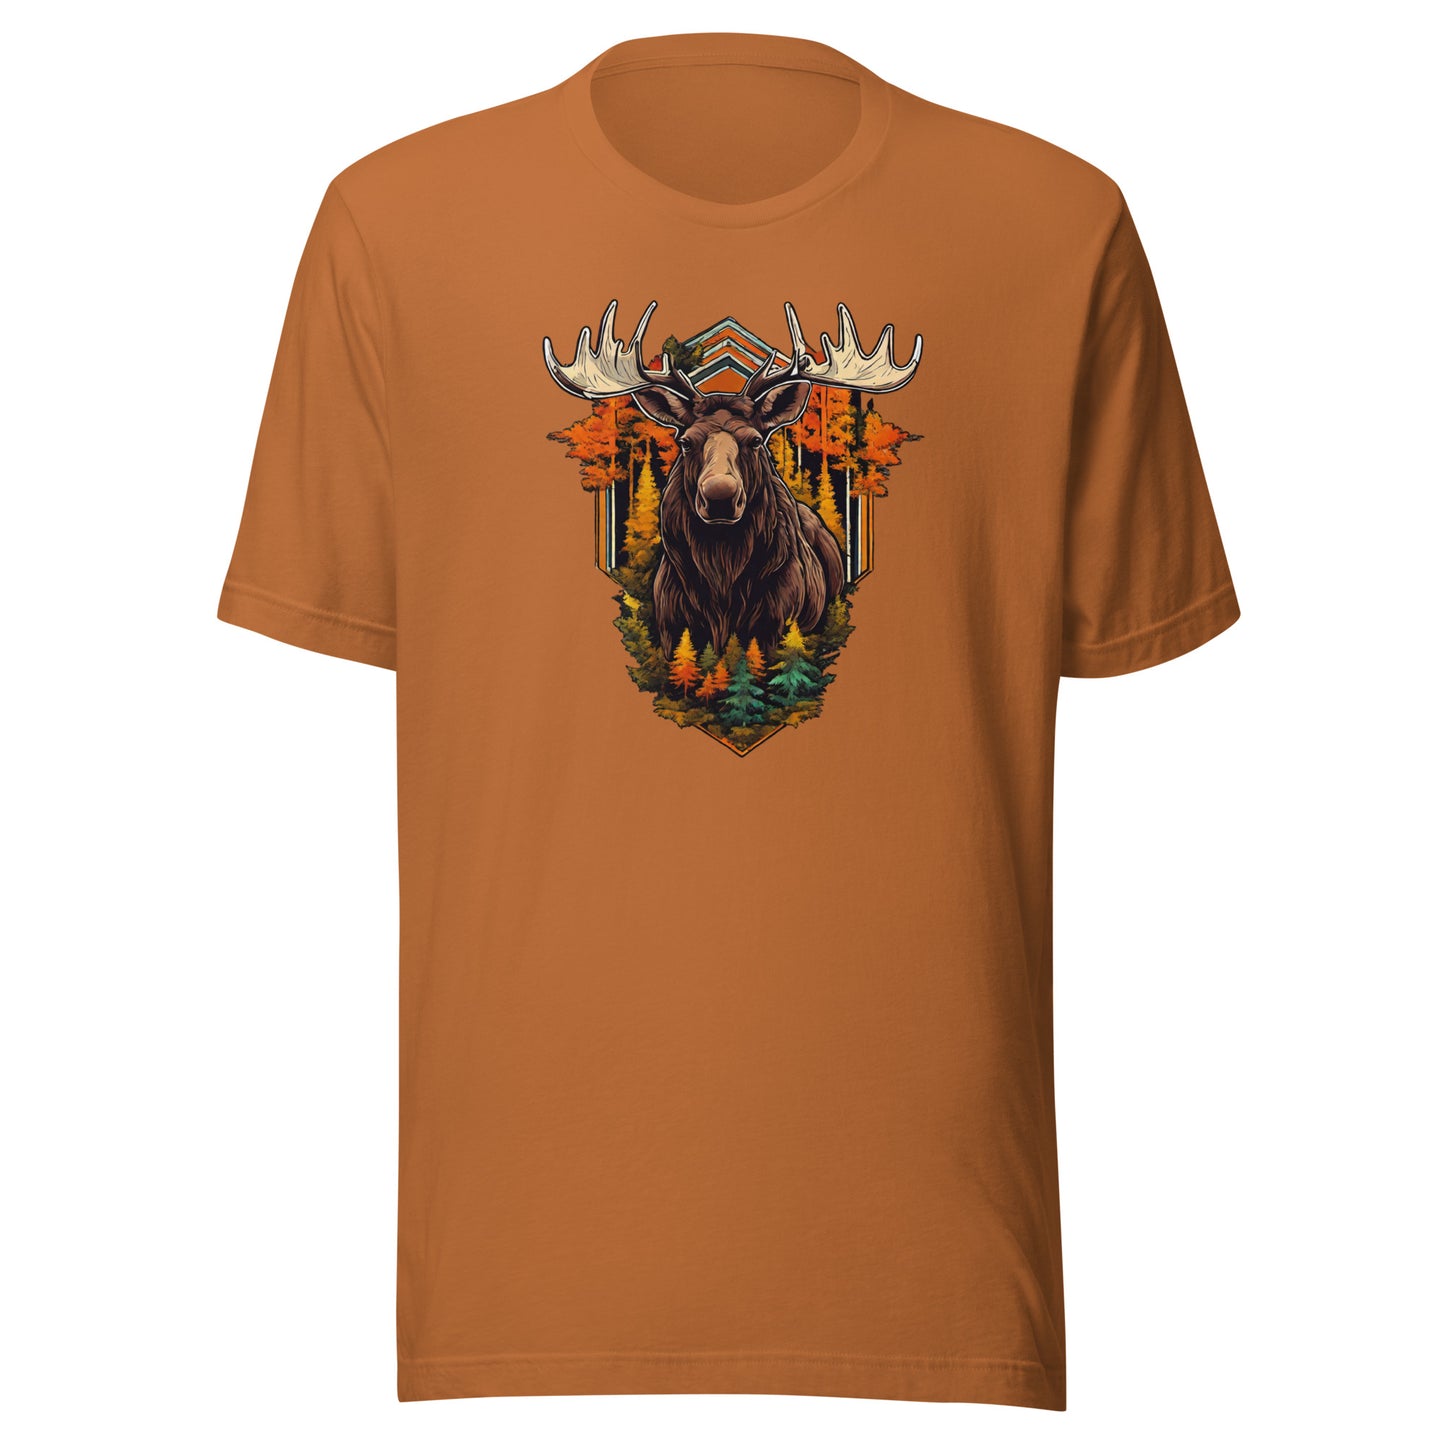 Moose & Forest Emblem Men's T-Shirt Toast